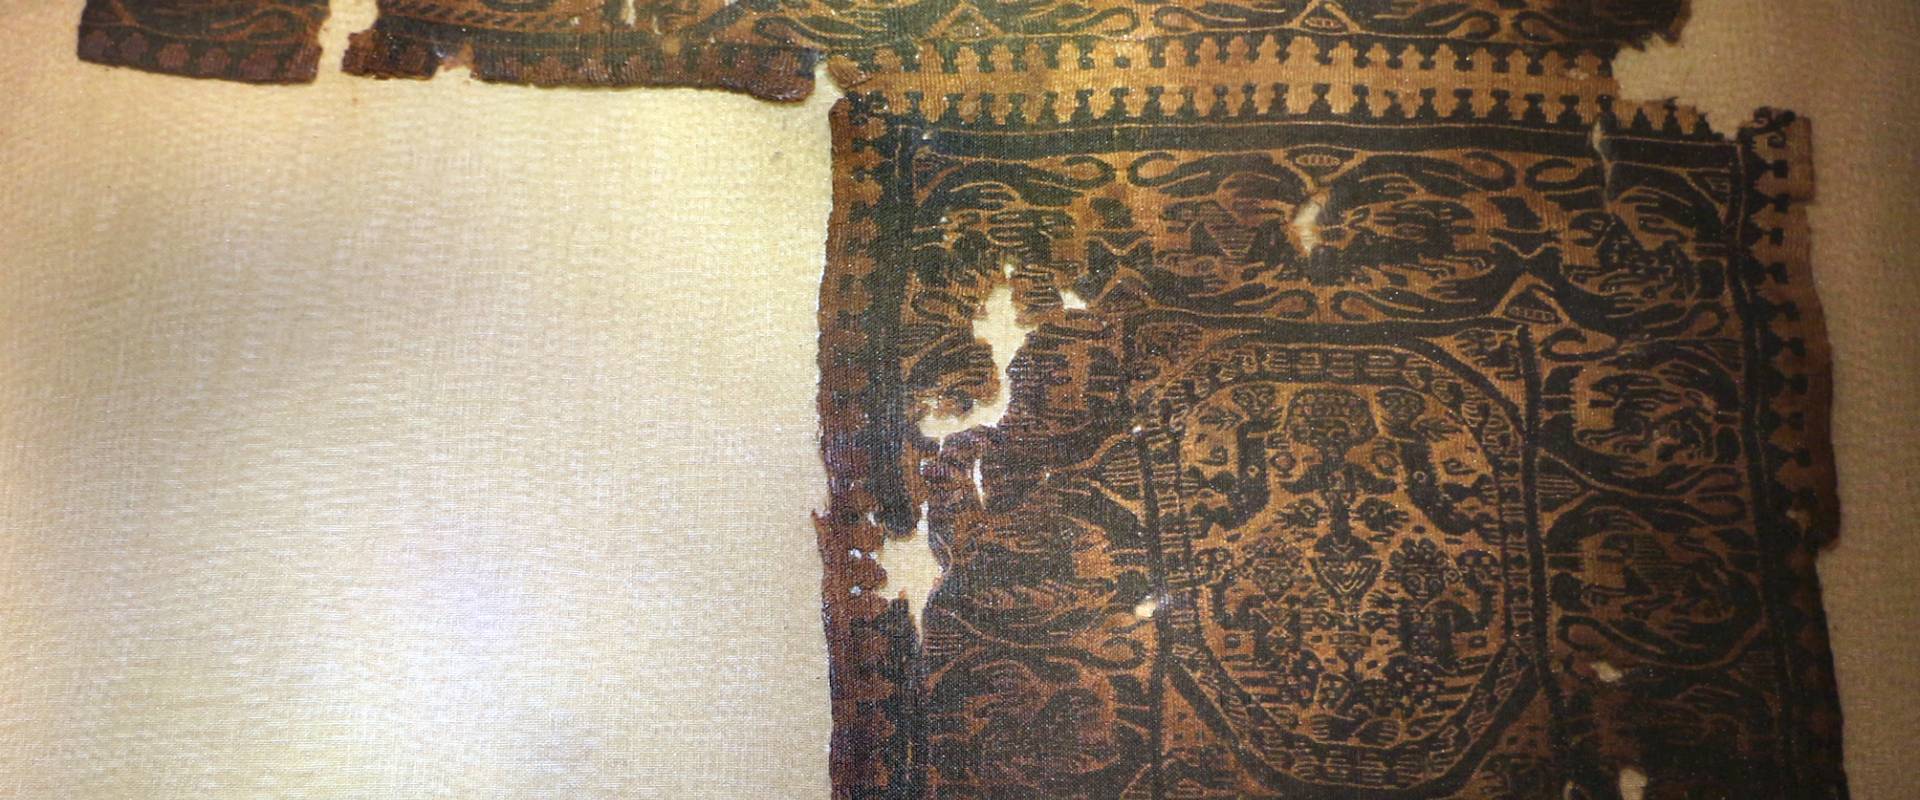 Egitto copto, clavo di tunica con inserto e nascita di afrodite, lana e lino, 590-610 dc ca photo by Sailko